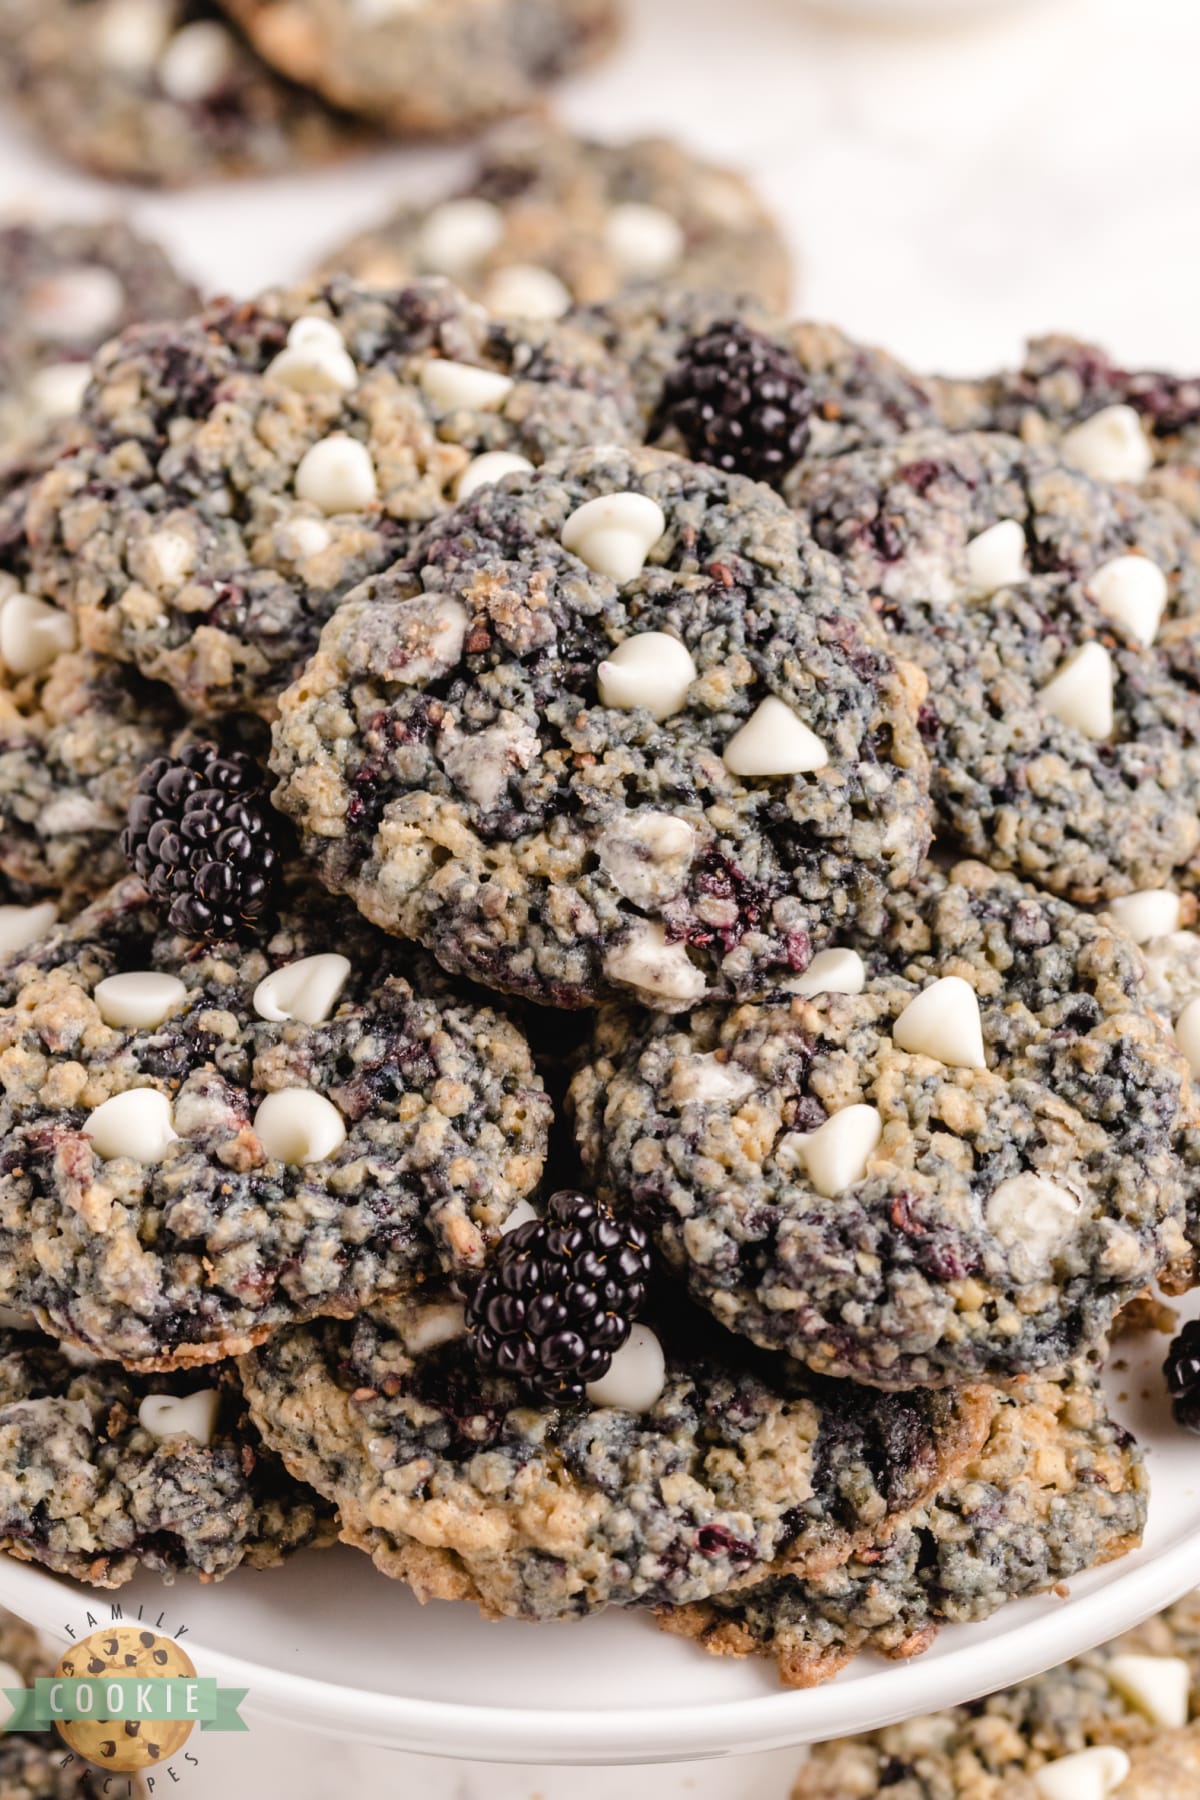 Oatmeal cookies with blackberries